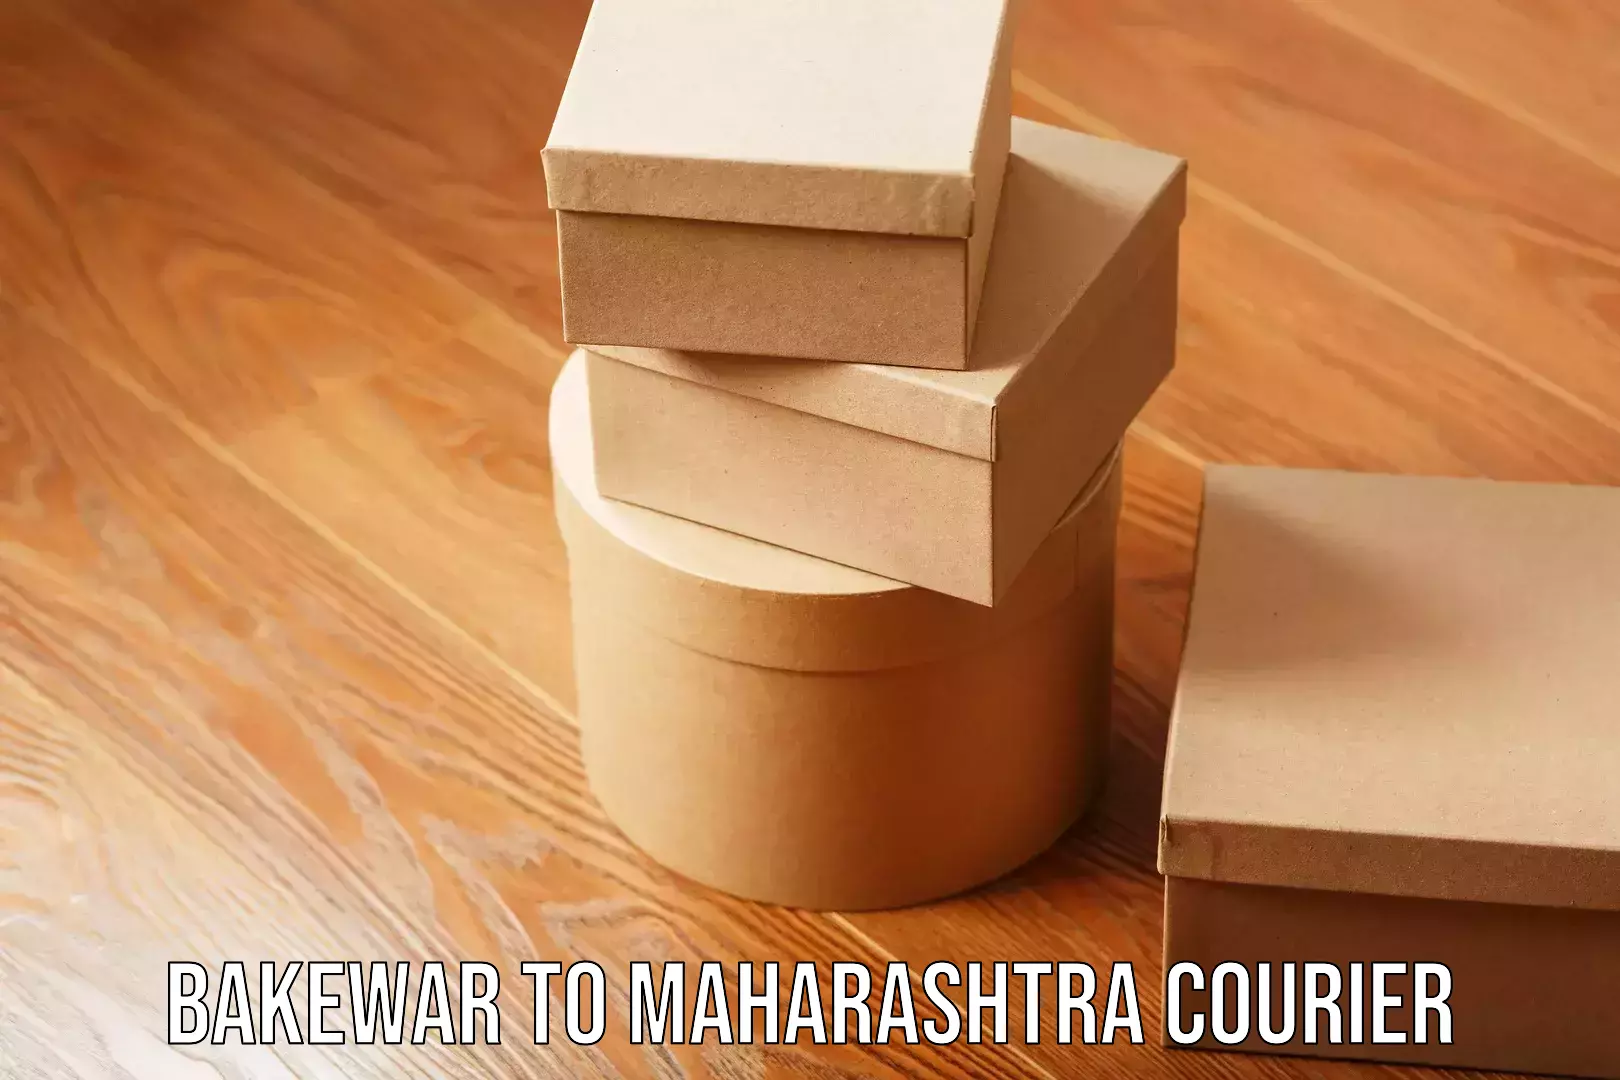 Fastest parcel delivery Bakewar to Maharashtra